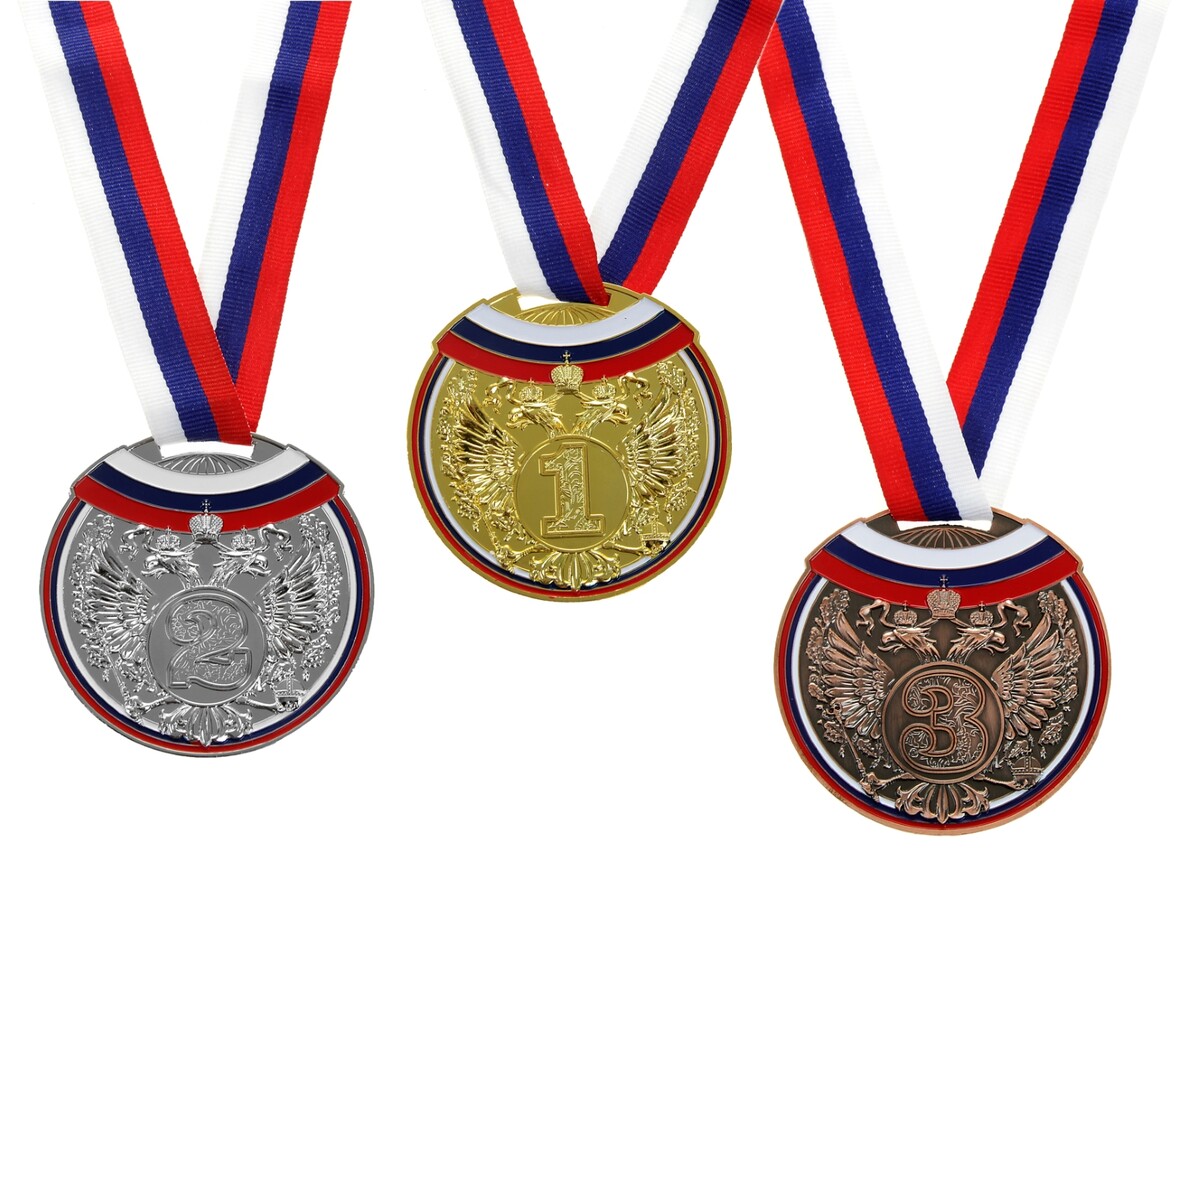 Медаль призовая 014 диам 7 см. 3 место, триколор. цвет бронз. с лентой медаль призовая 193 диам 3 5 см 3 место триколор бронз без ленты